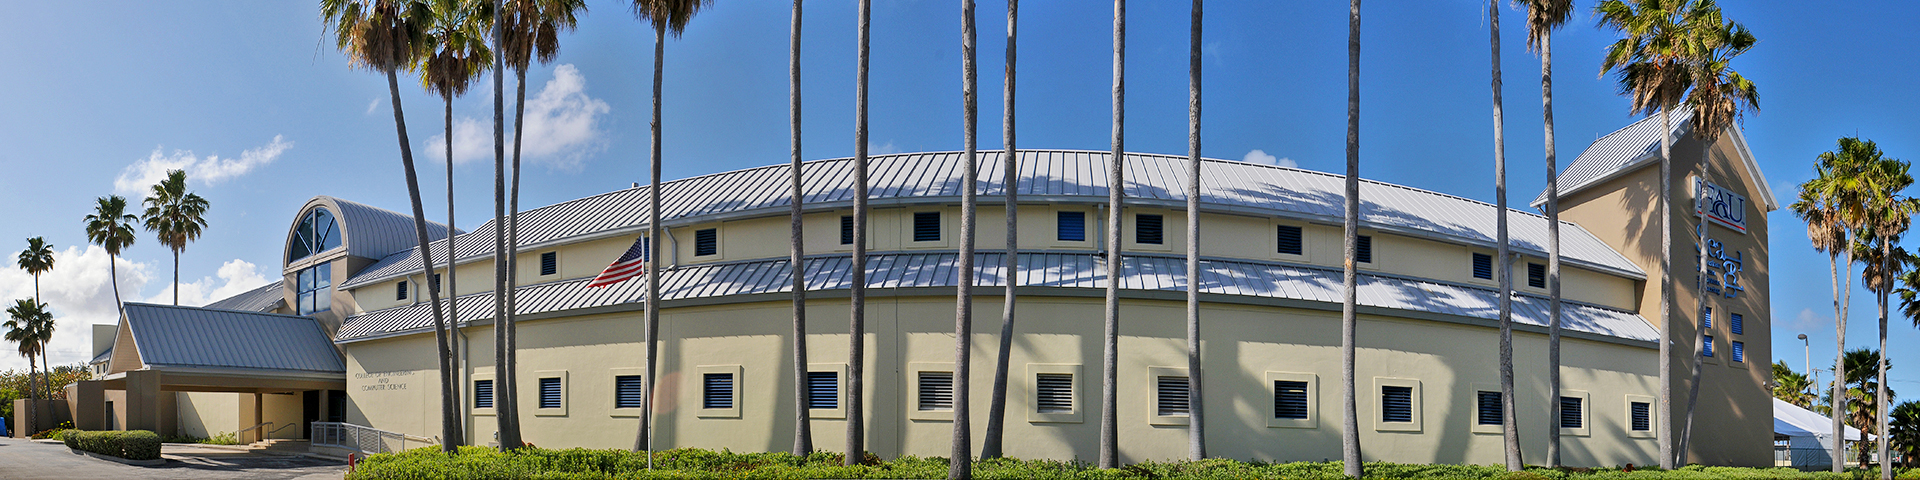 Dania Beach Research Center